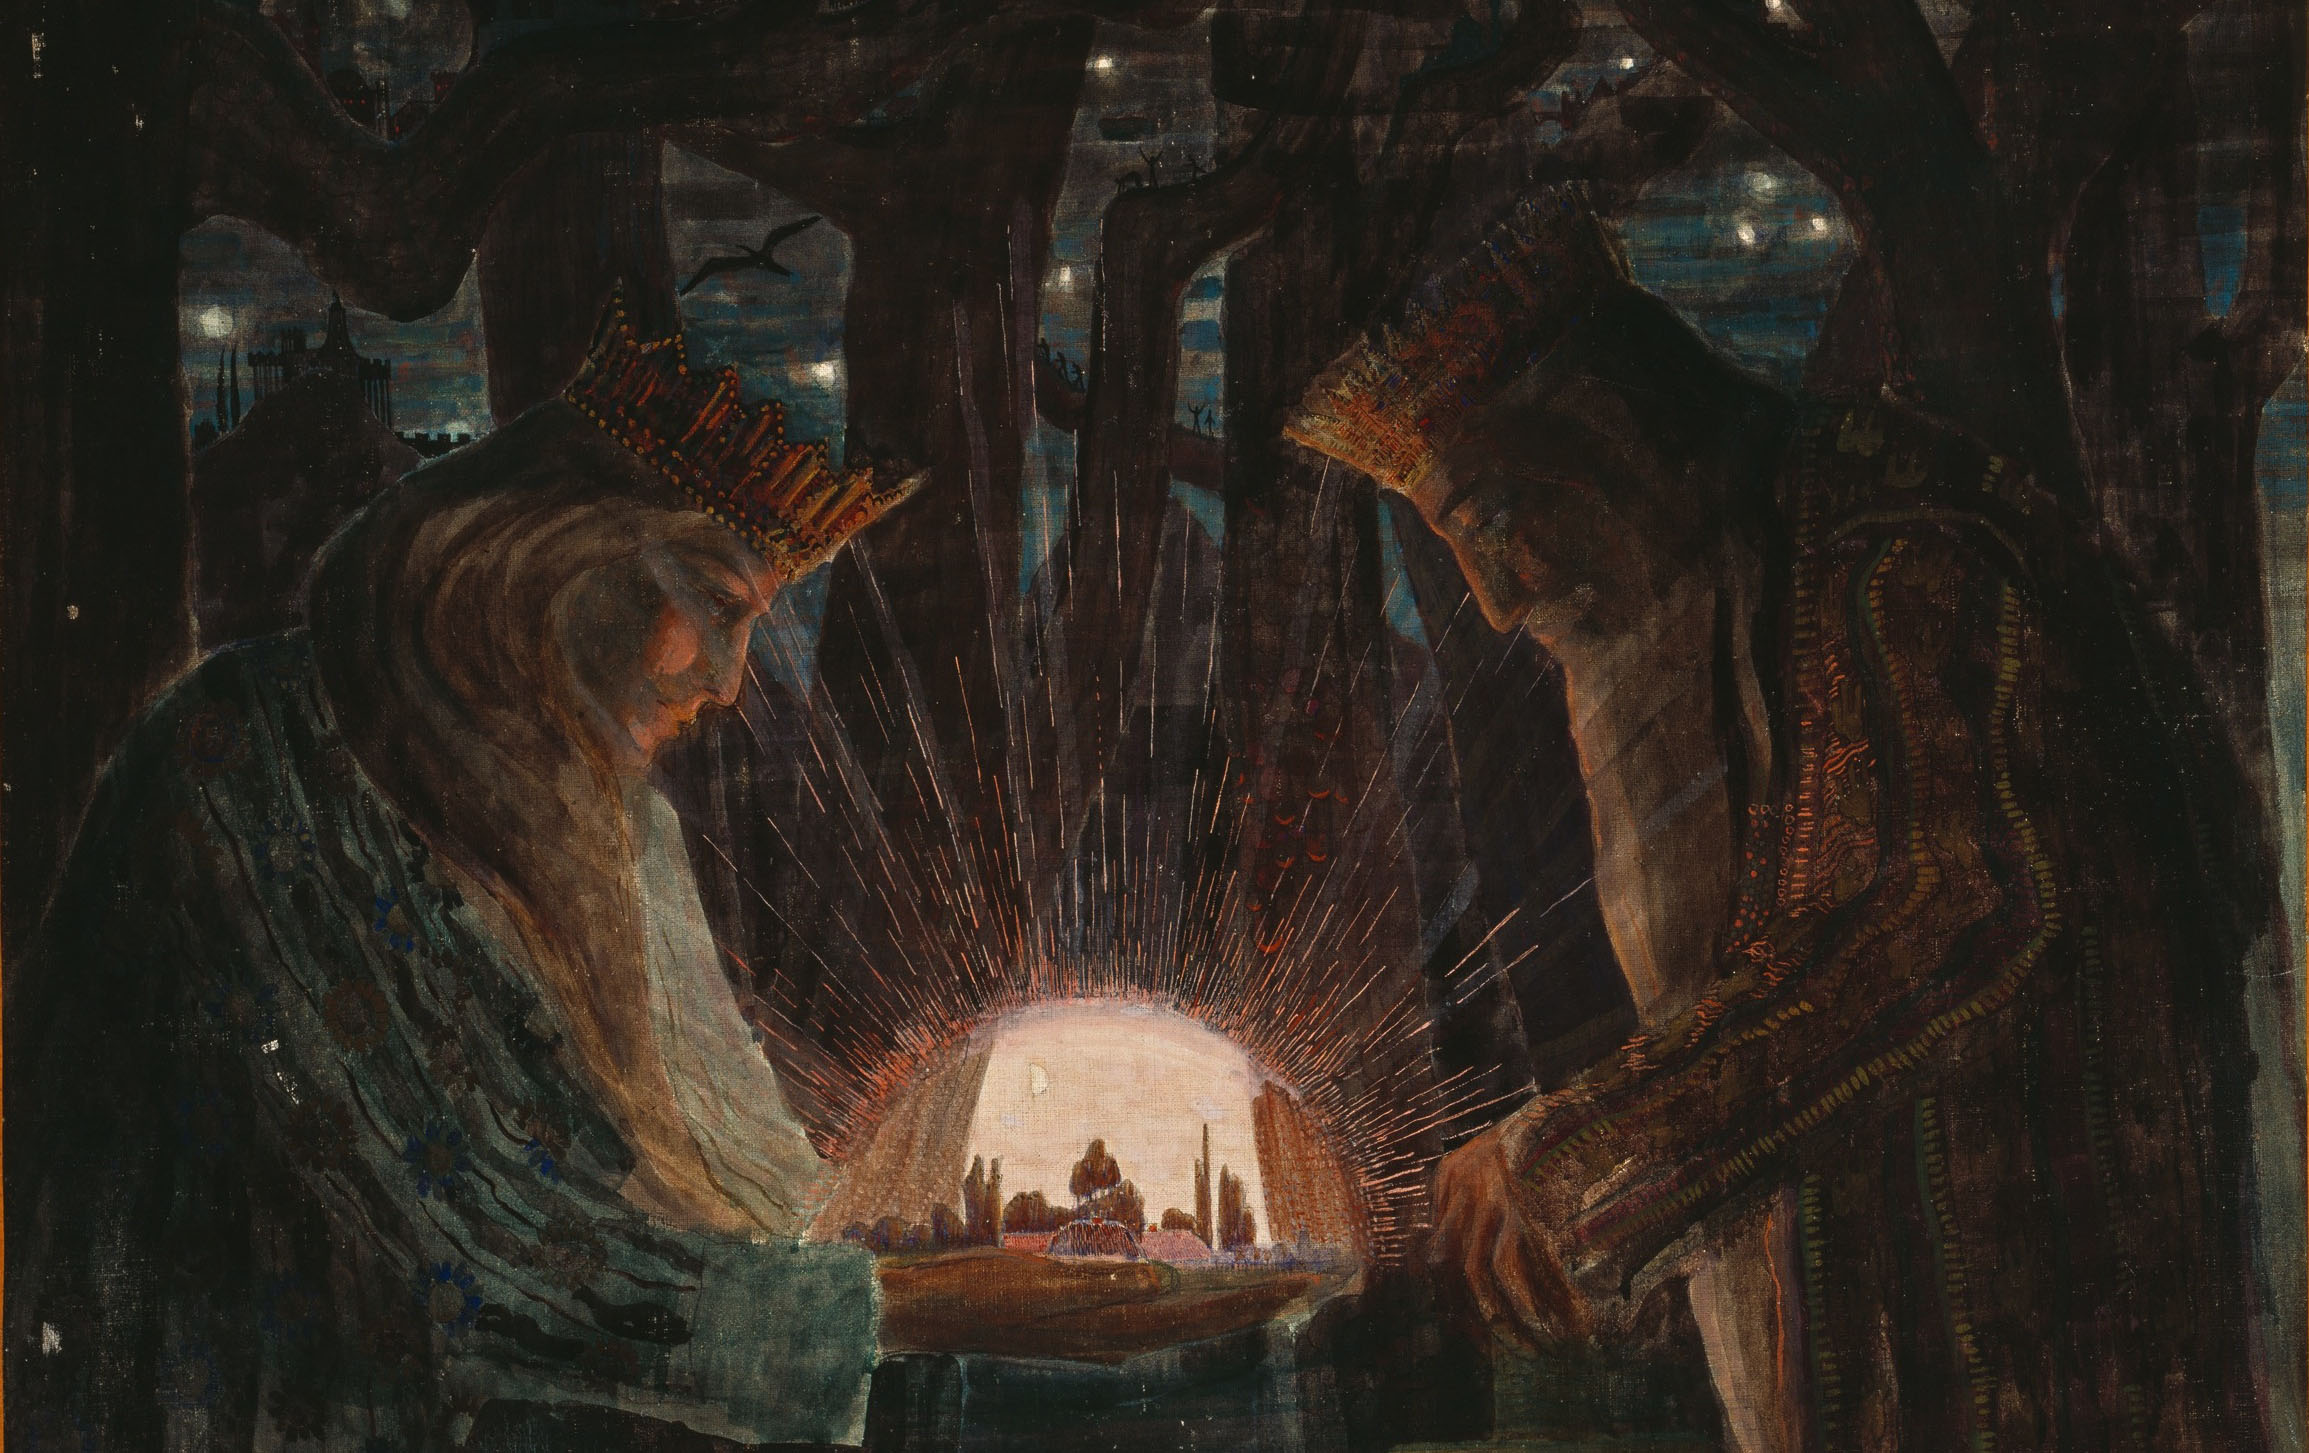 Kings' Fairy Tale, 1909, by Mikalojus Konstantinas Čiurlionis